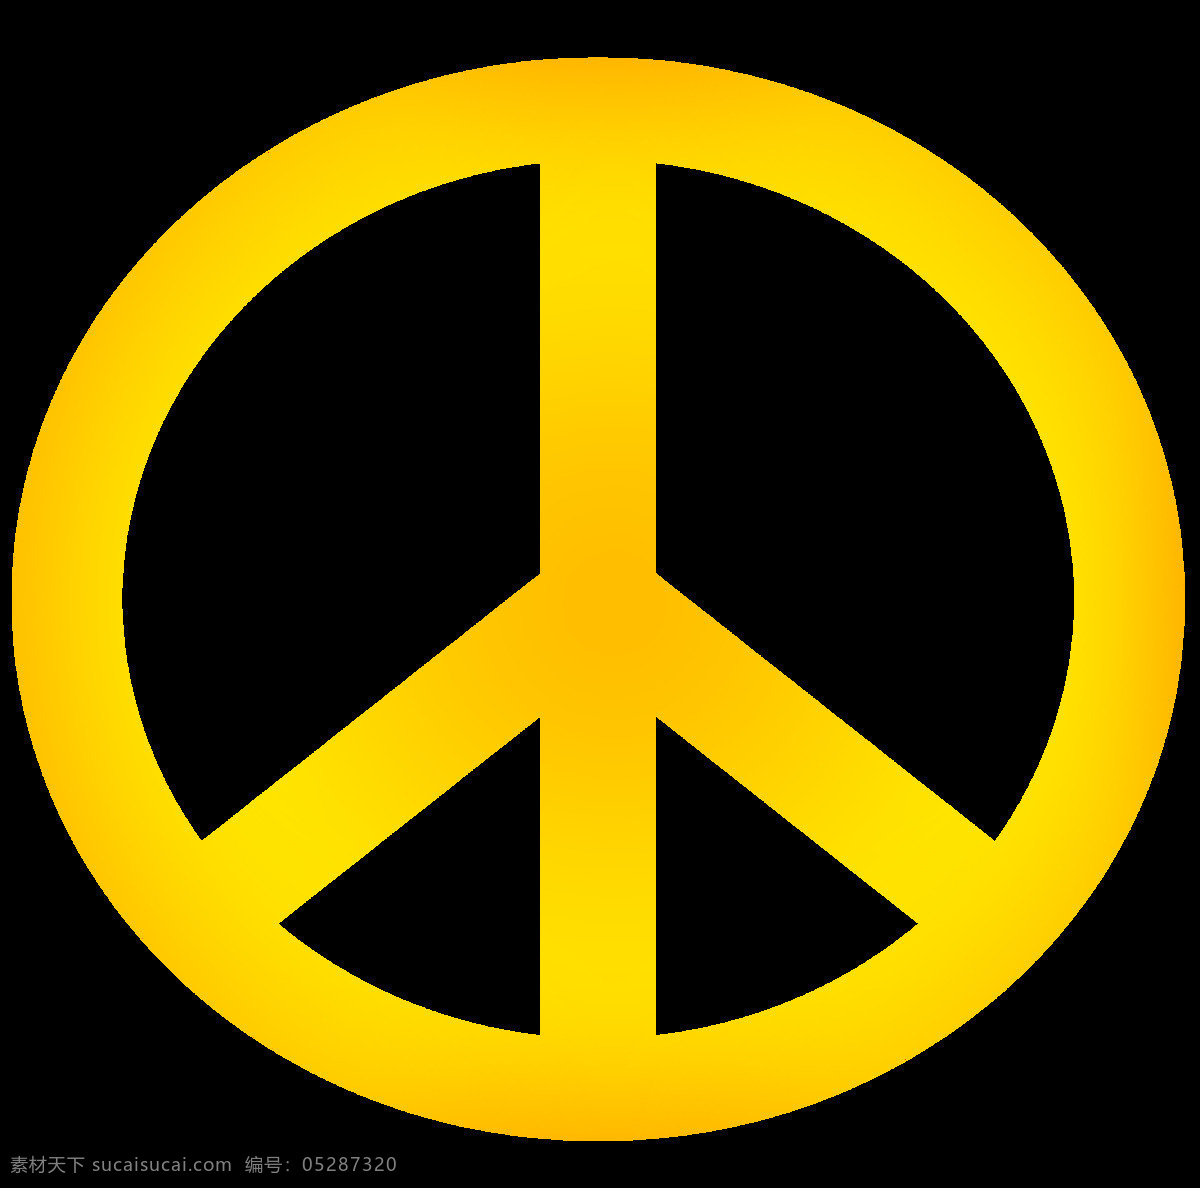 黄色 和平 符号 免 抠 透明 图 层 黄色和平符号 标志 世界 和平符号设计 和平符号 简 笔画 克 洛 诺斯 人形 图案 大全